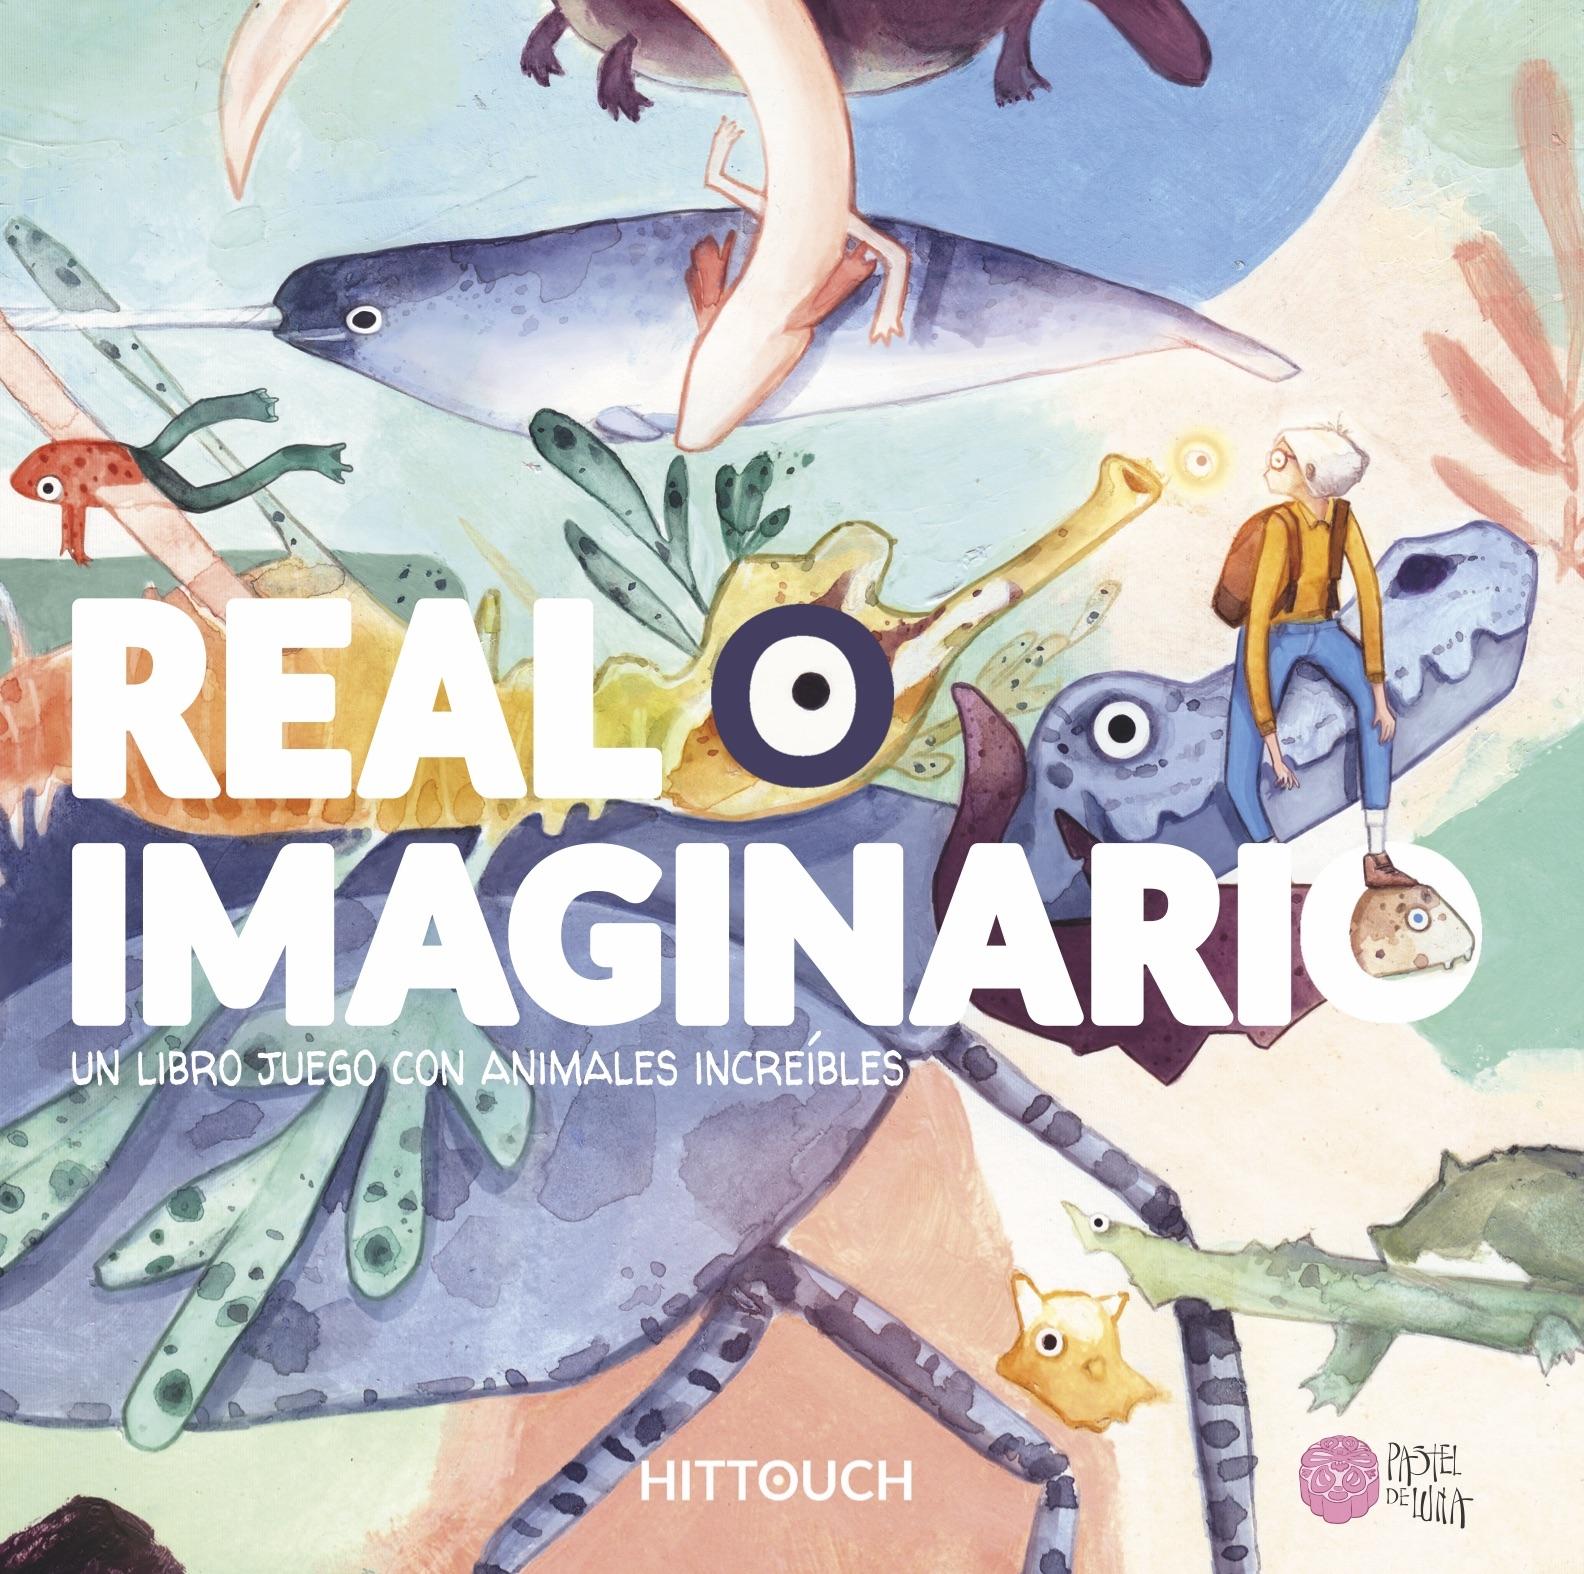 Real o Imaginario "Un Libro Juego con Animales Increíbles"